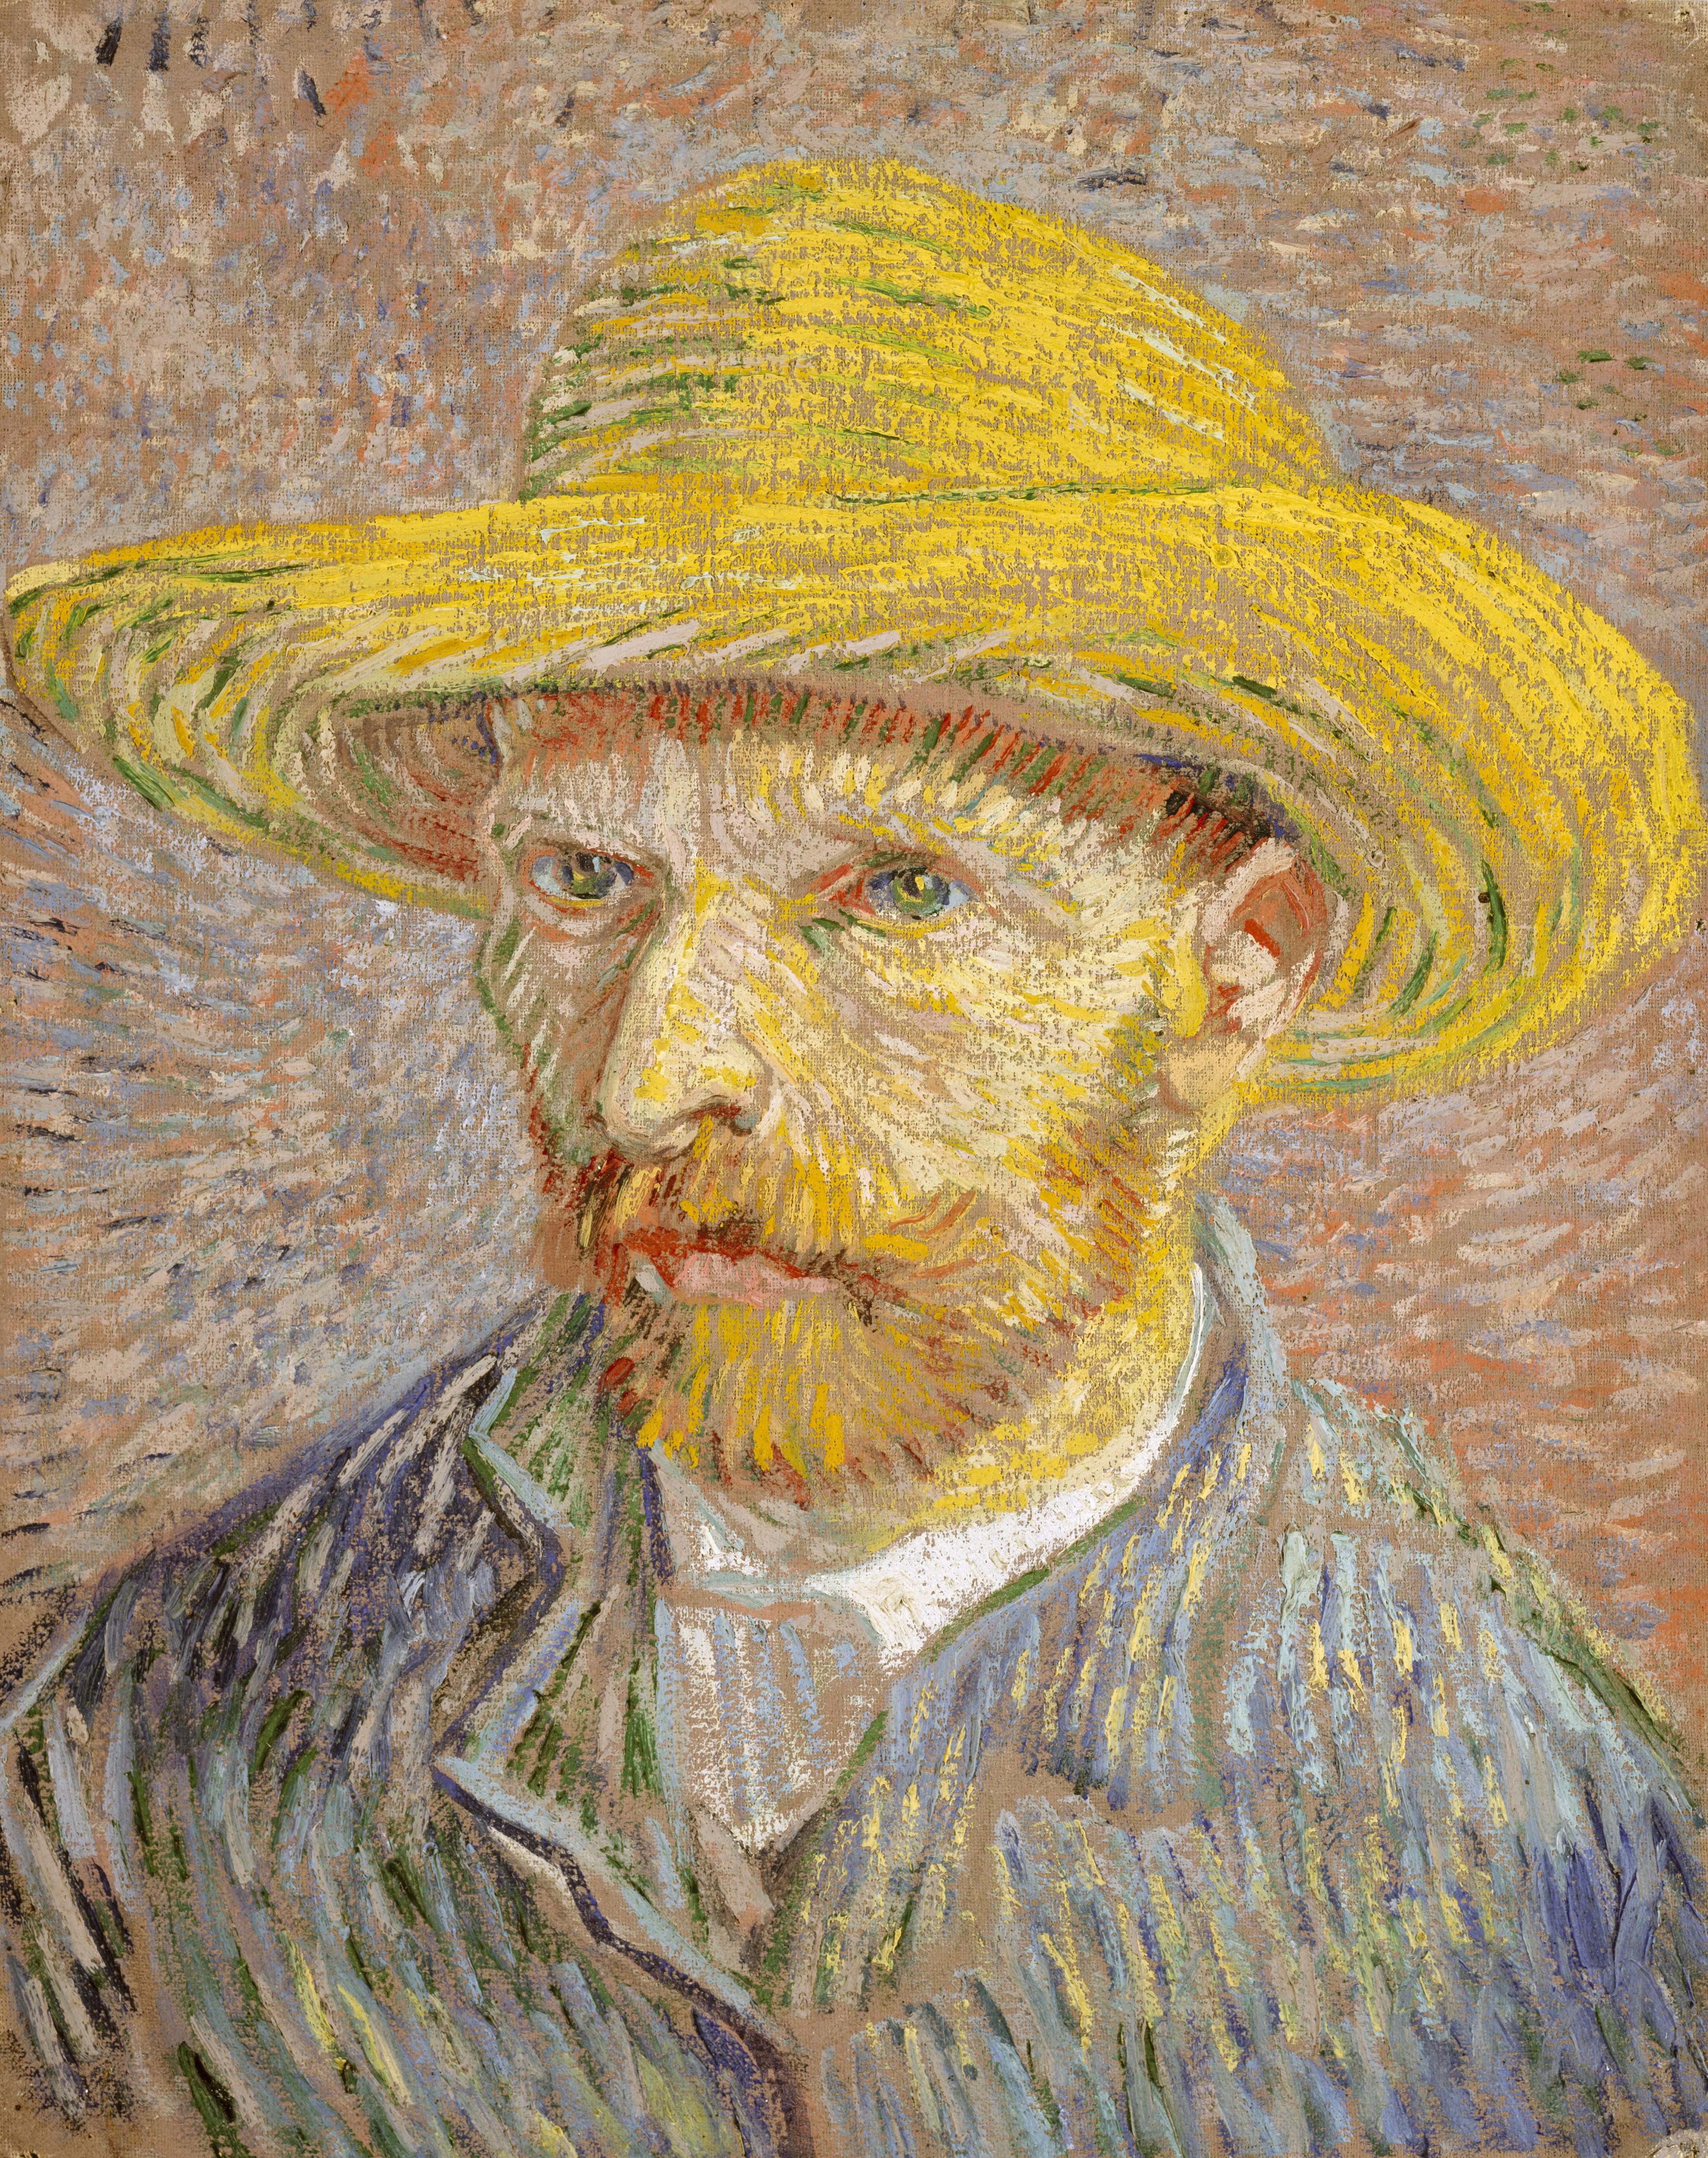 草帽自畫像 by Vincent van Gogh - 1887 - 40.6 × 31.8 釐米 